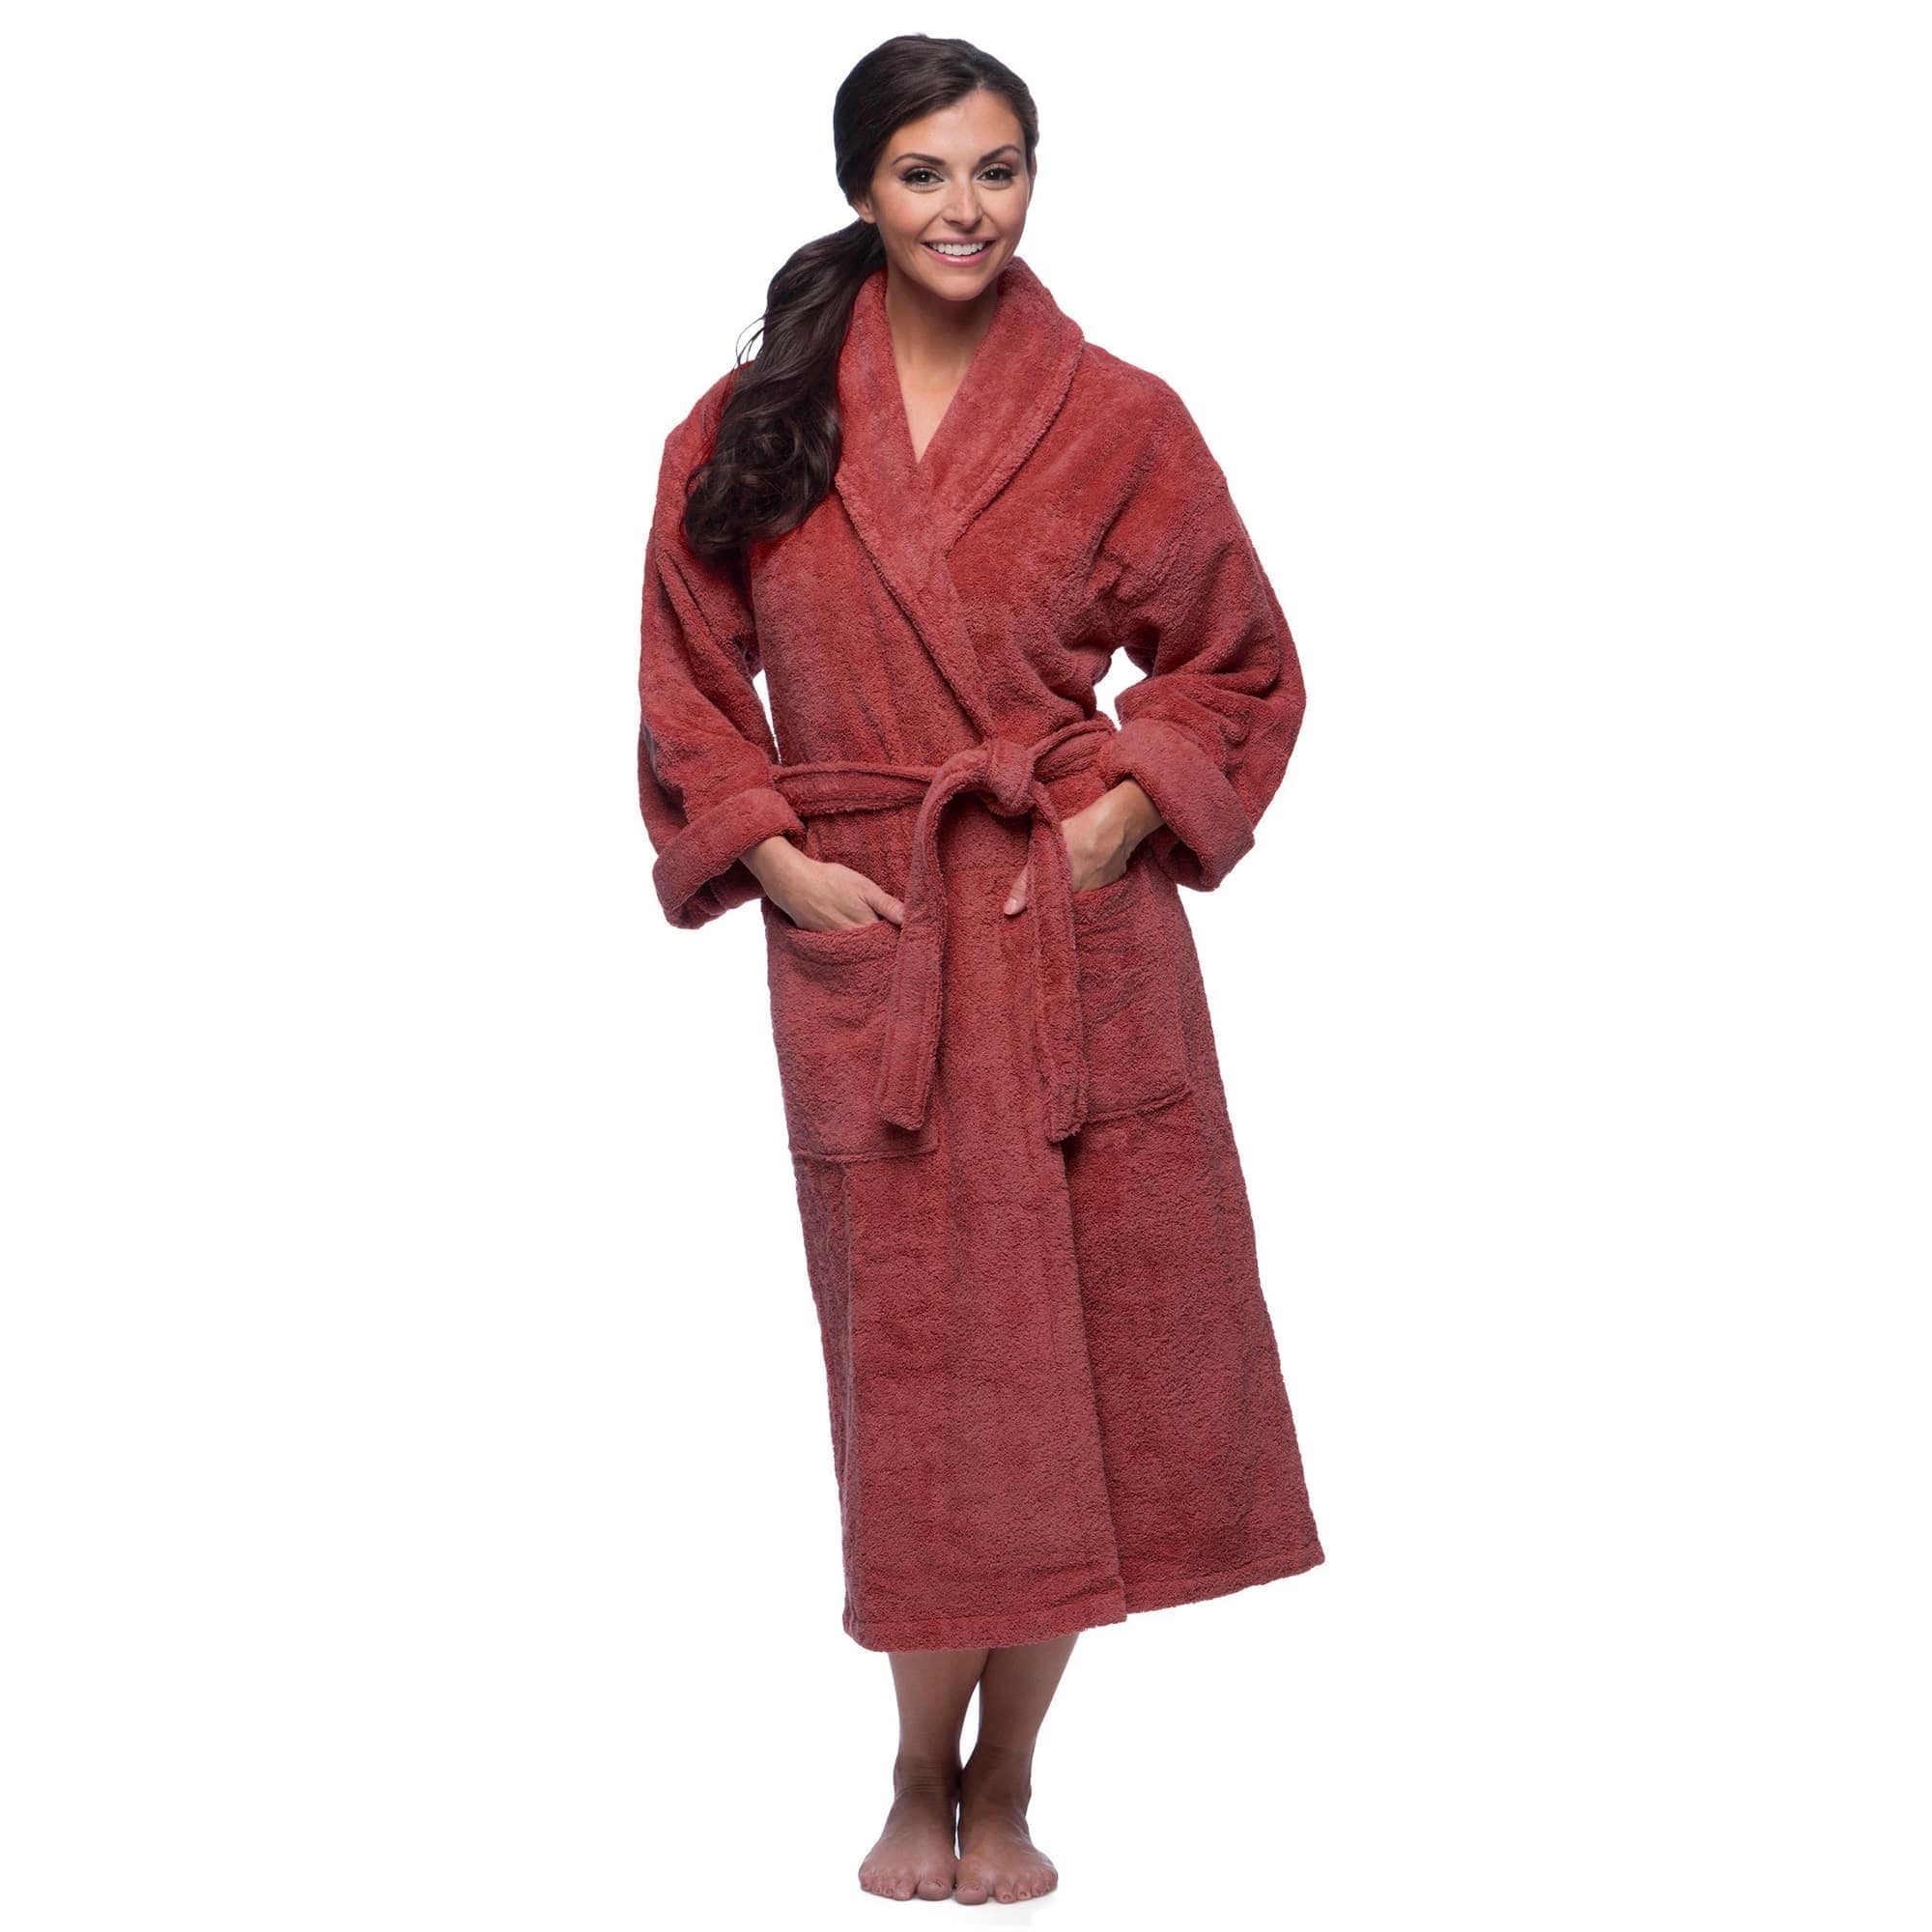 American Soft Linen Unisex Luxury Hotel Spa Warm Shawl Collar Soft Plush Fleece Bath Robe - Teal